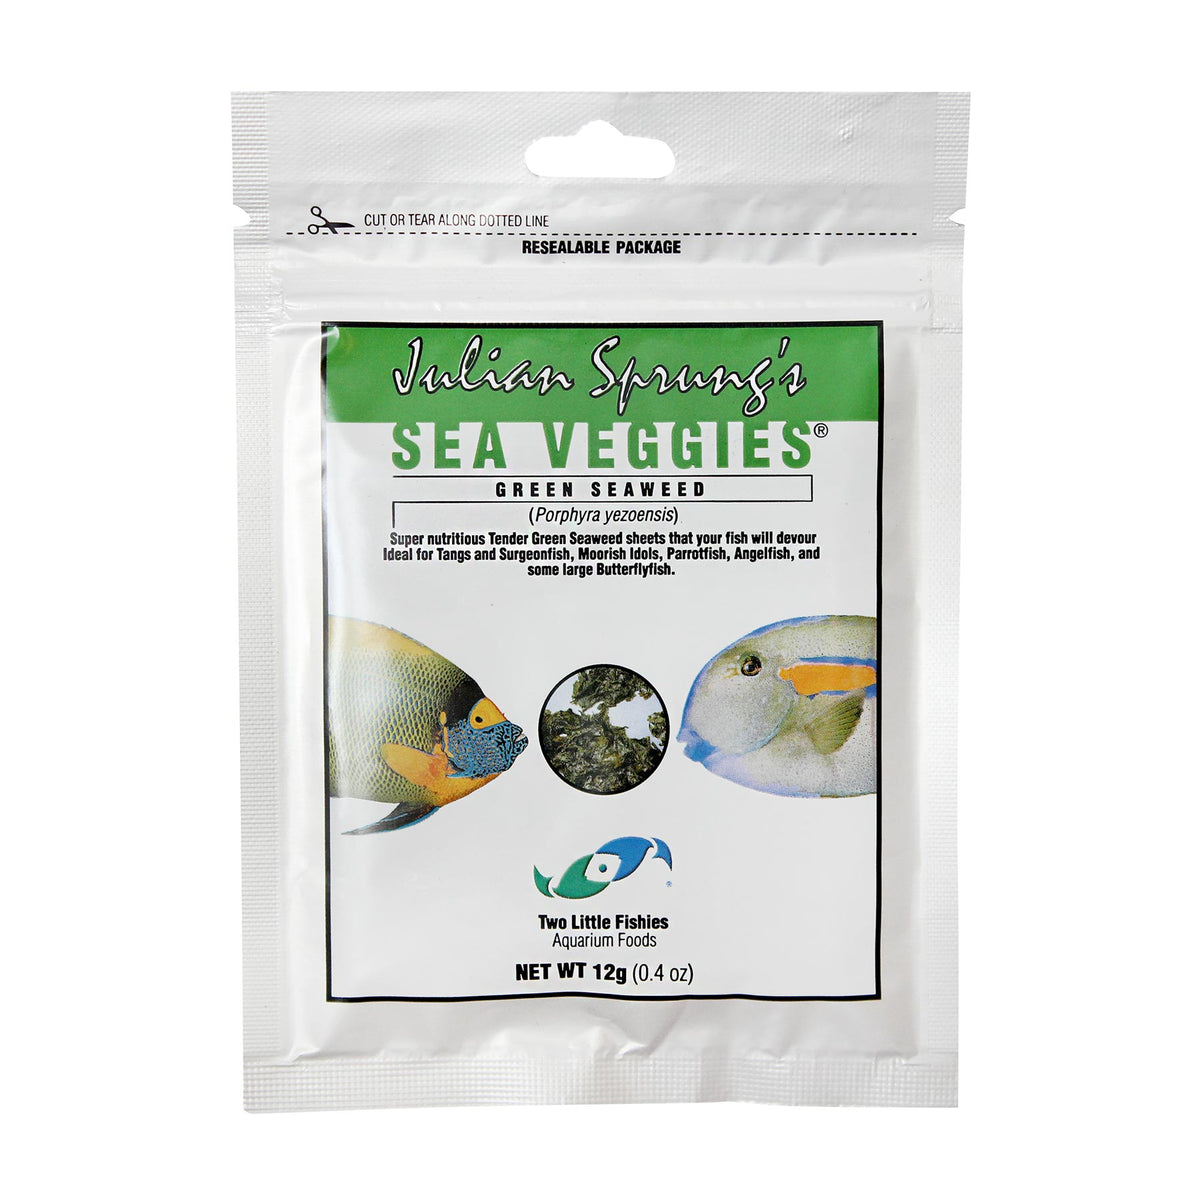 Julian Sprung&#39;s Sea Veggies Green Seaweed